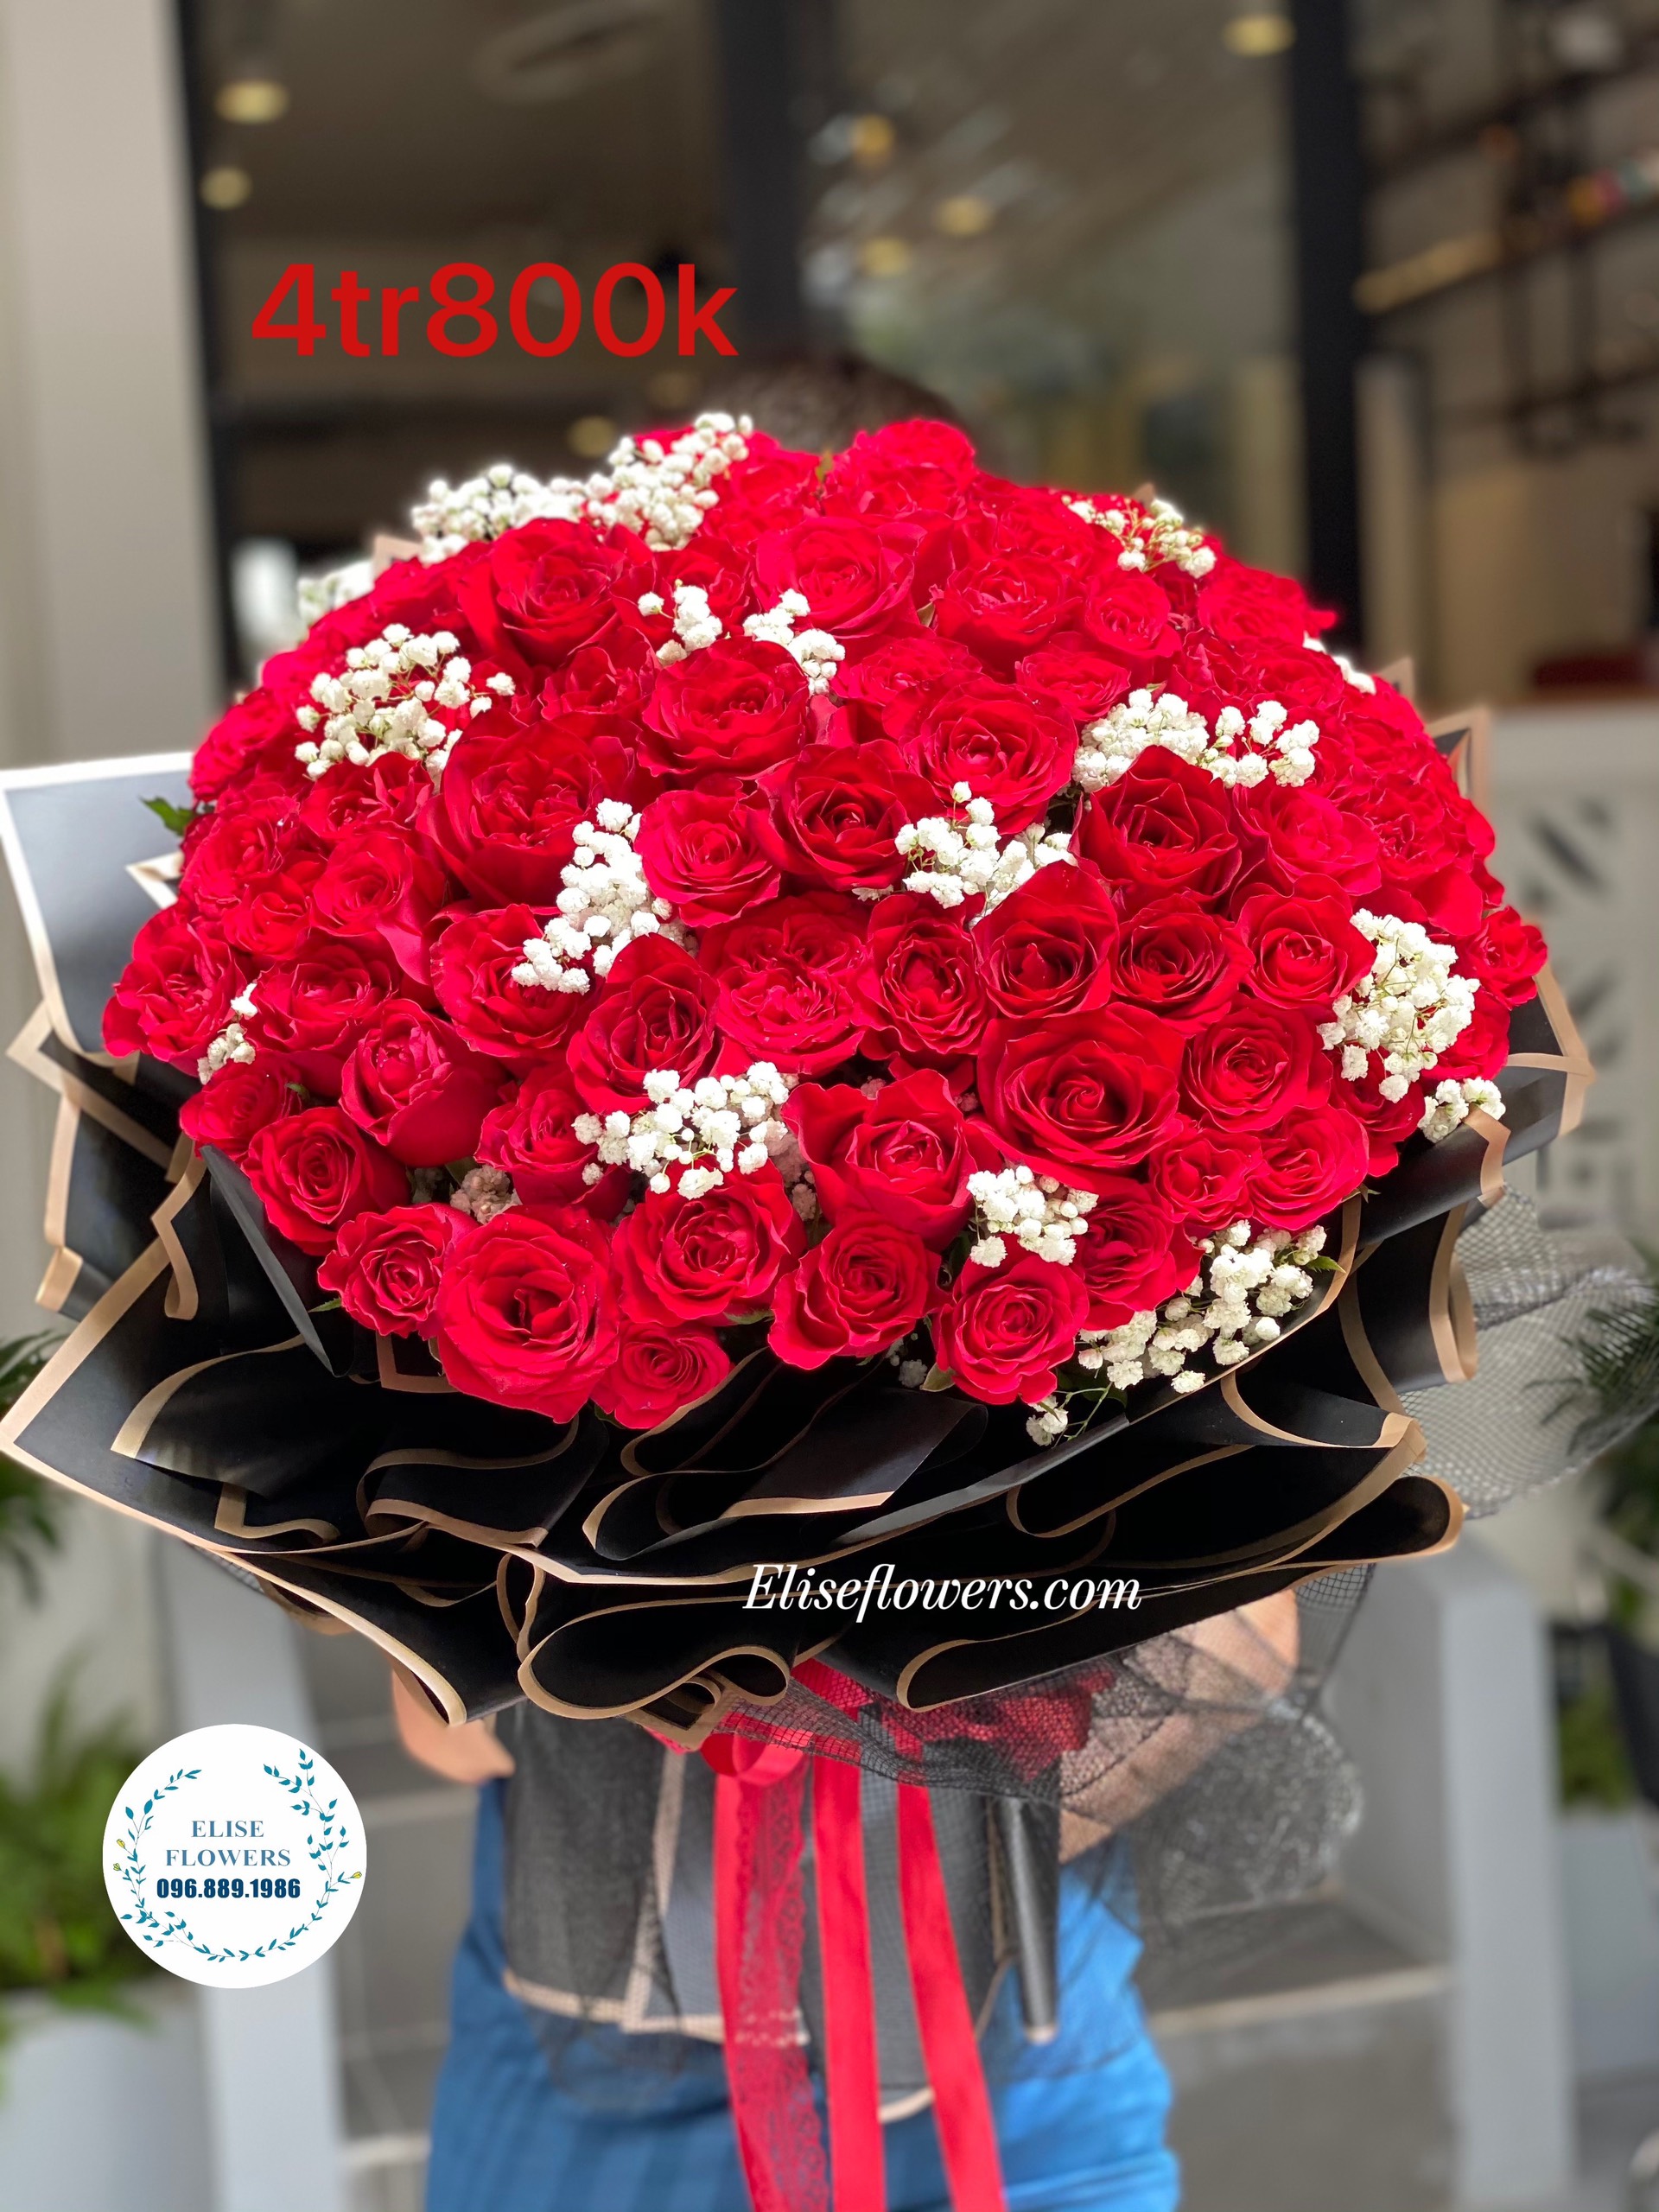 Shop điện hoa uy tín ở Hà Nội - Đặt hoa online - Giao hoa tận nơi